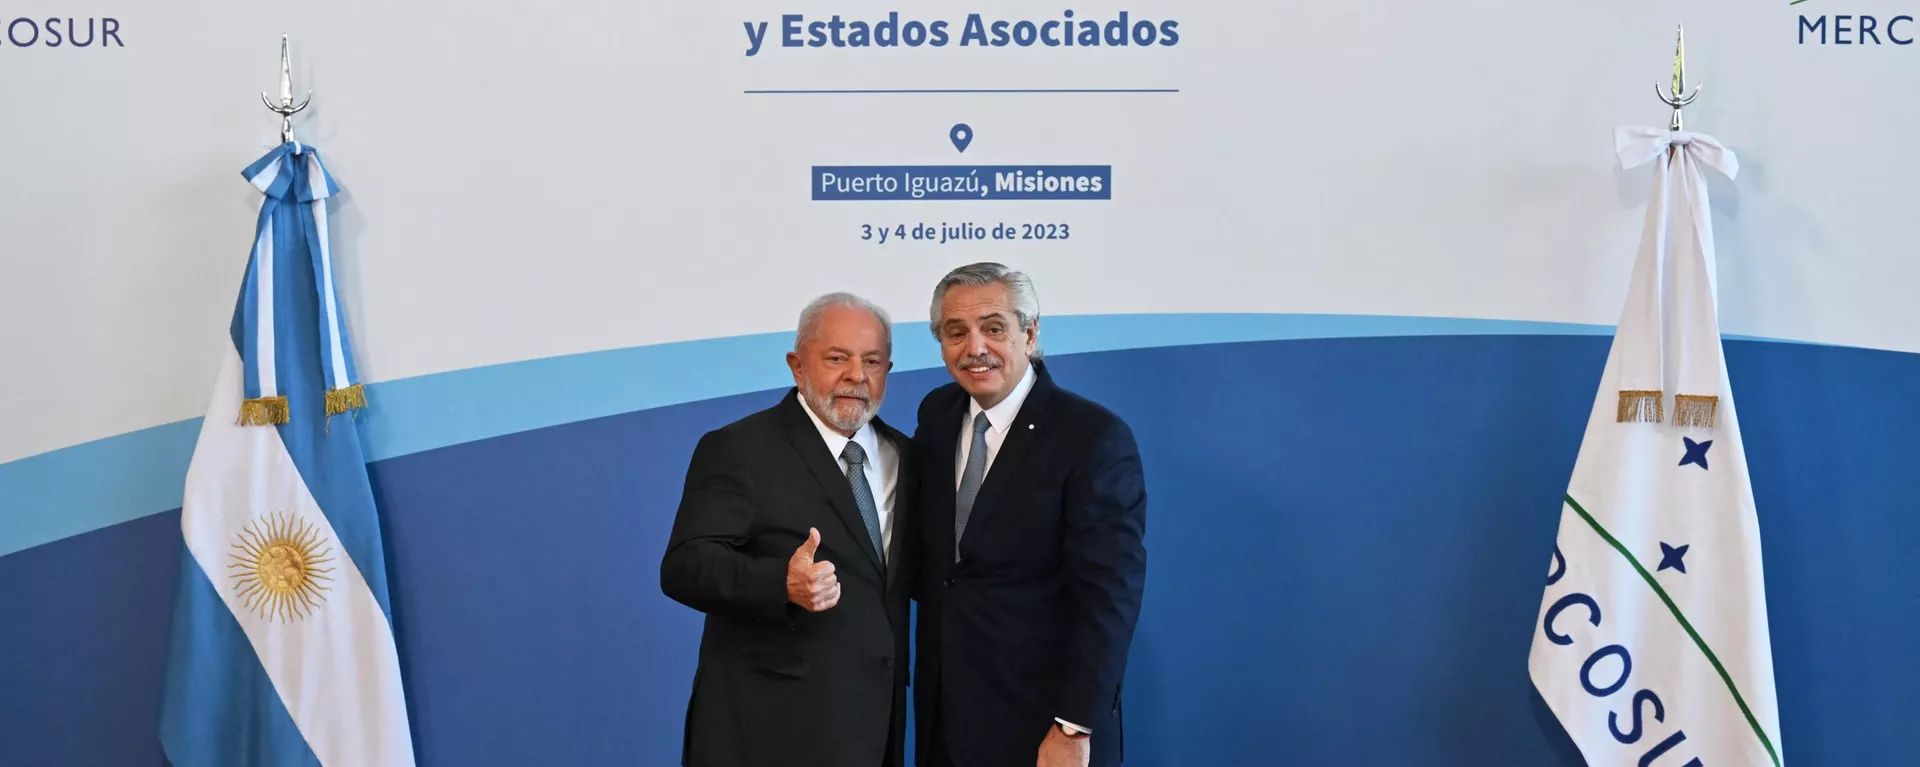 Presidente brasileiro, Luiz Inacio Lula da Silva, com seu homólogo argentino, Alberto Fernández, antes da cúpula do Mercosul em Puerto Iguazú, 4 de julho de 2023 - Sputnik Brasil, 1920, 04.07.2023